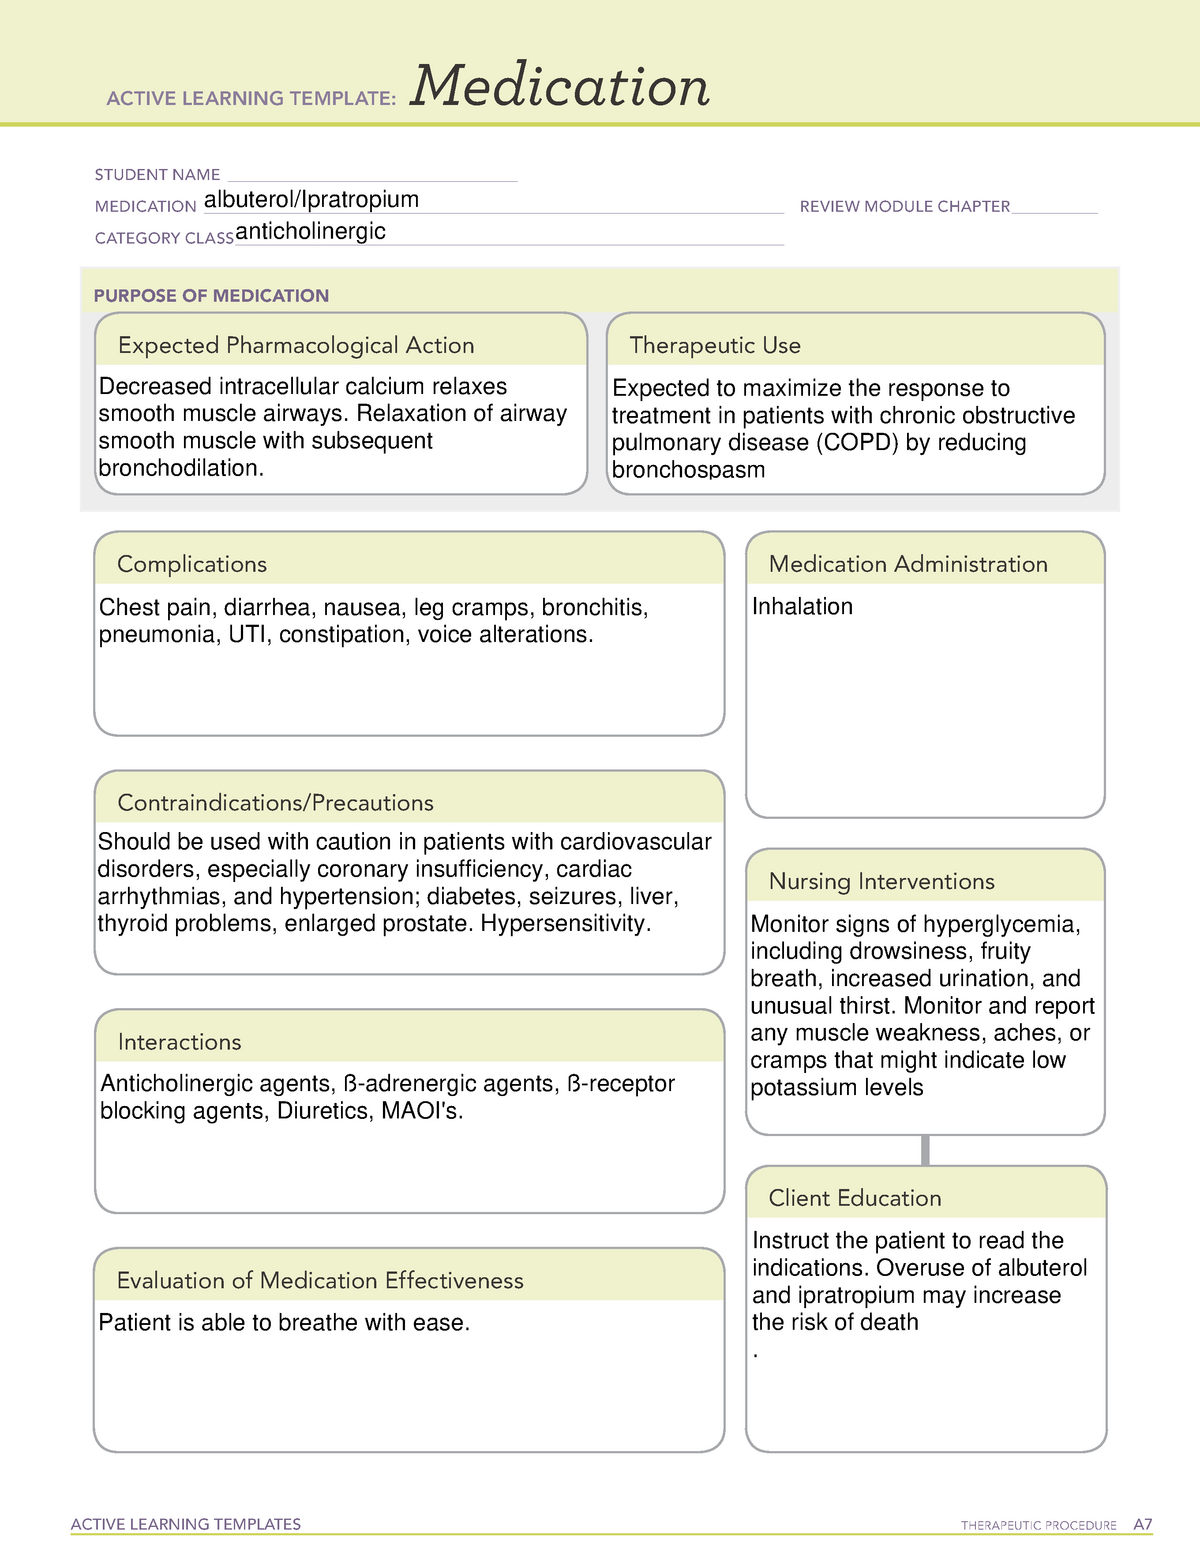 albuterol-ipratropium-active-learning-templates-therapeutic-procedure